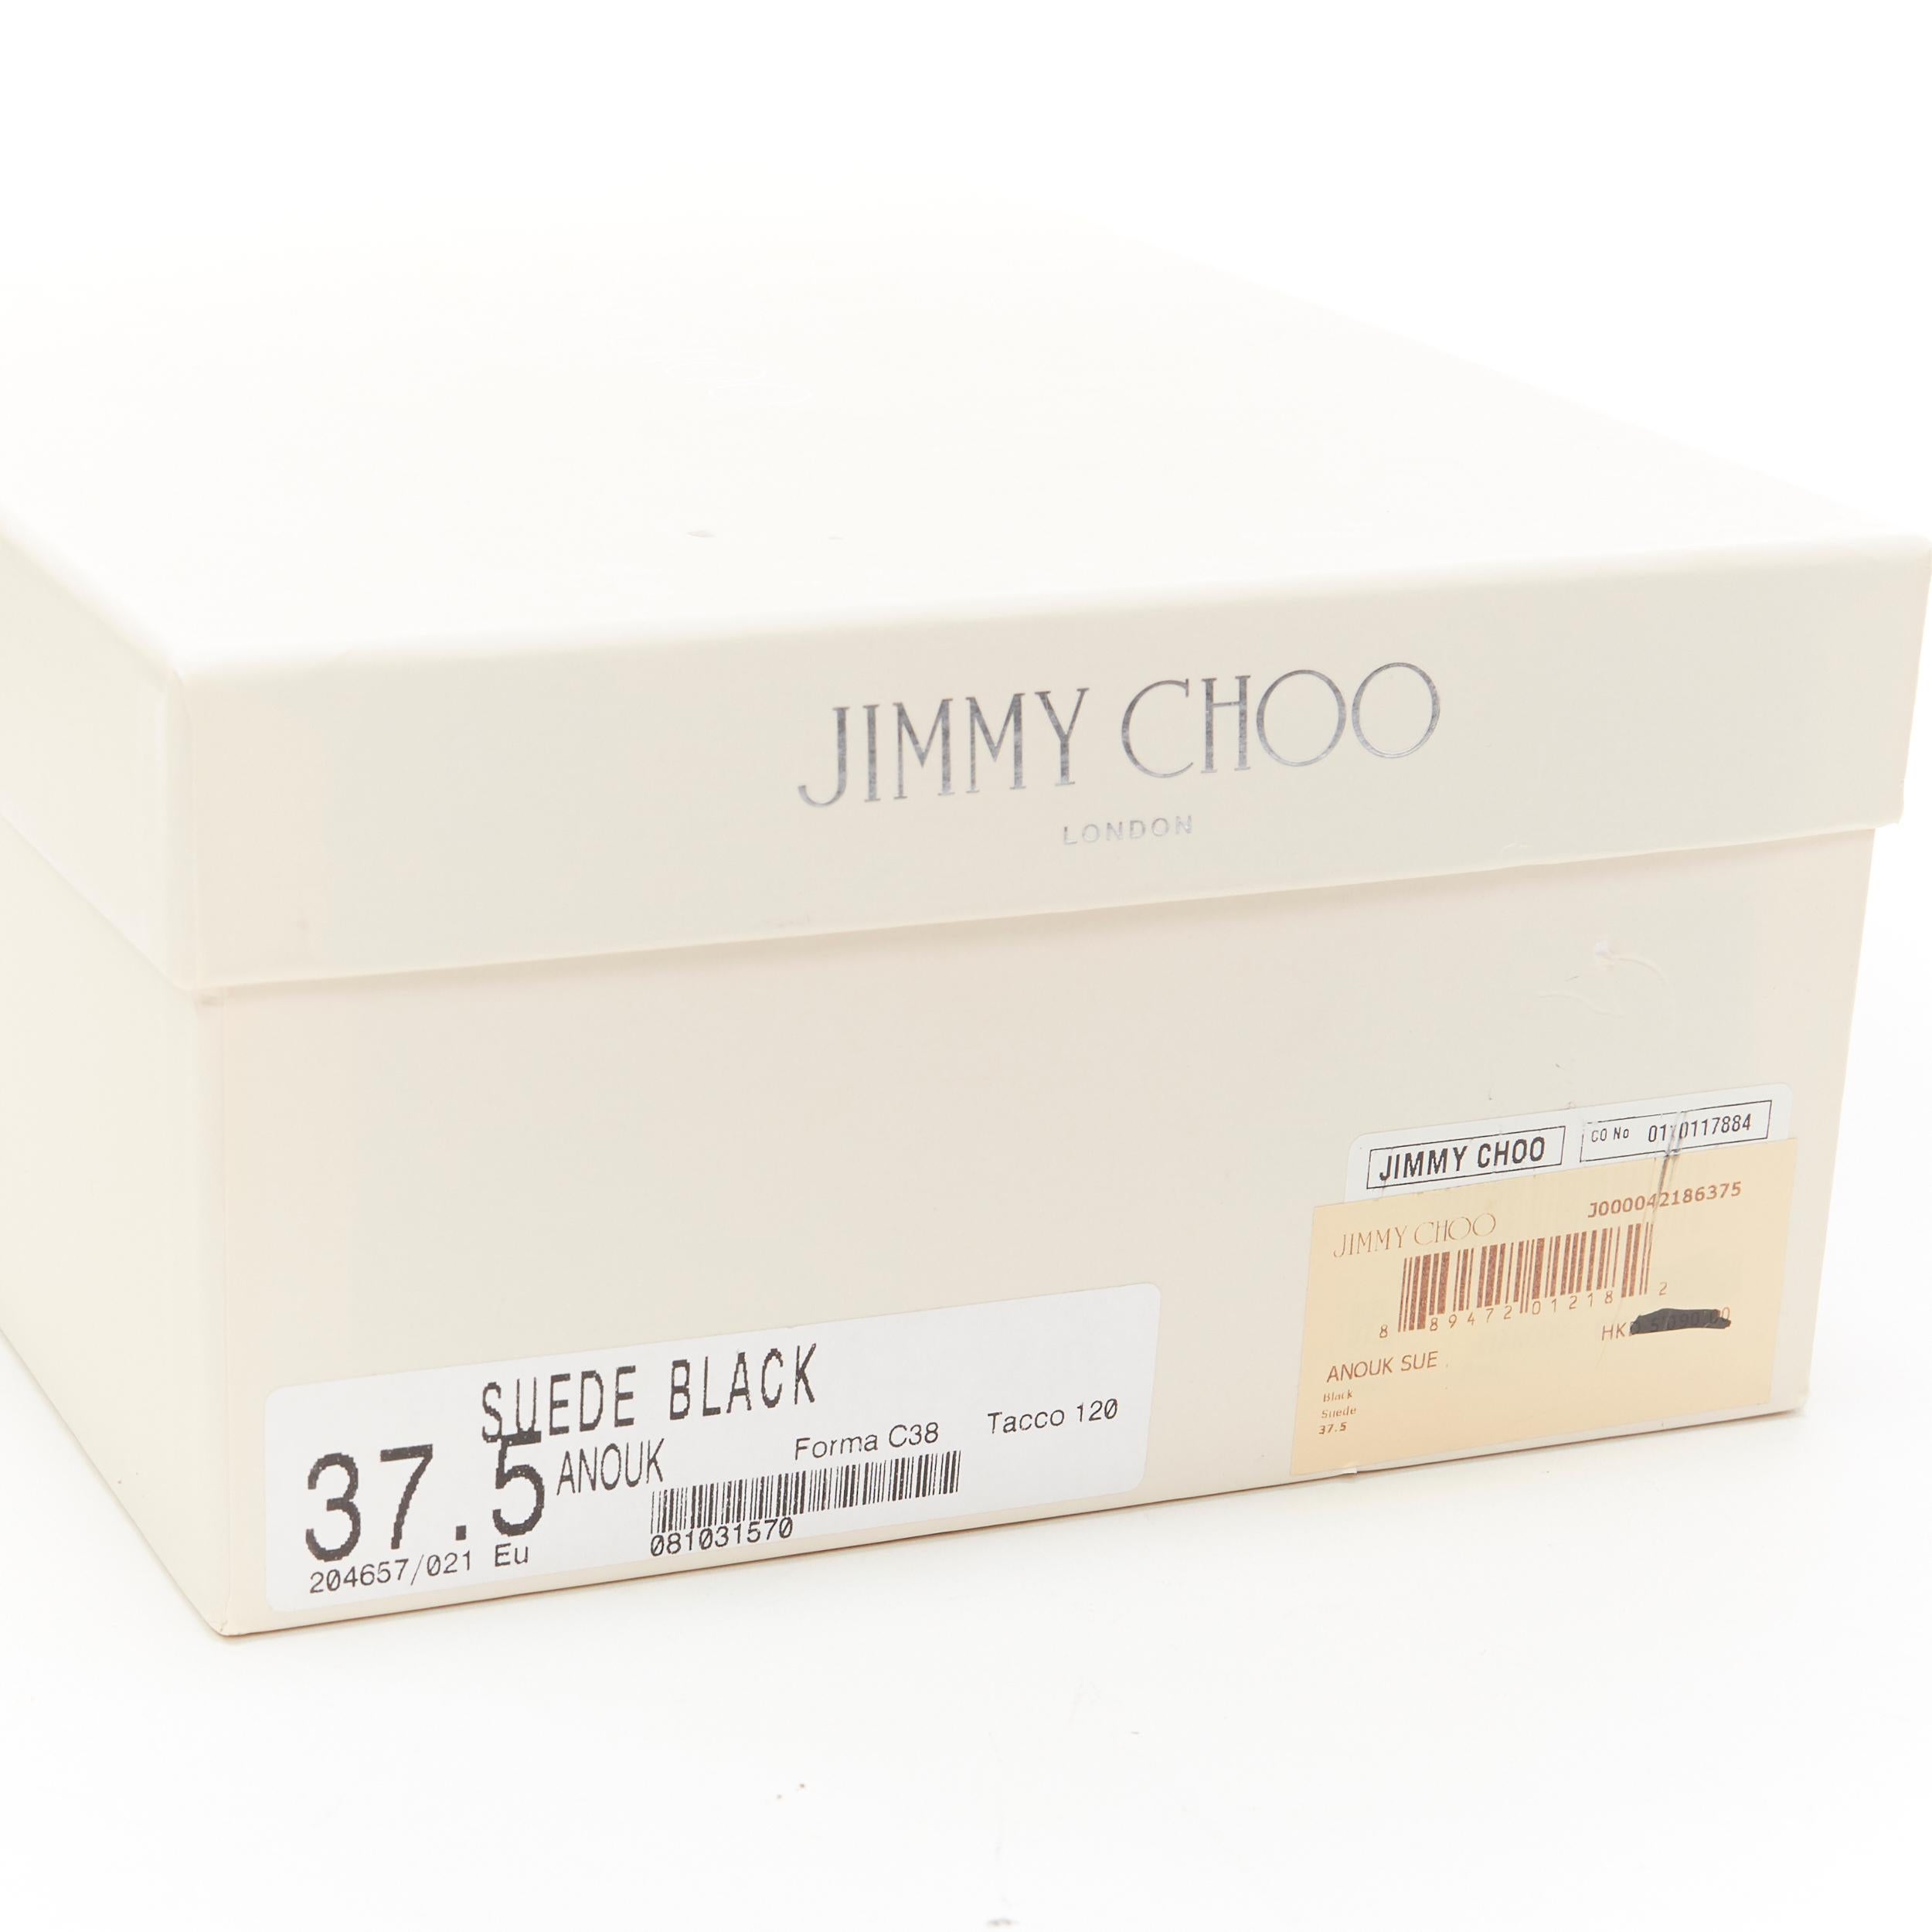 nouveau JIMMY CHOO Anouk 120 escarpin stiletto en daim noir à bout pointu EU37.5 7